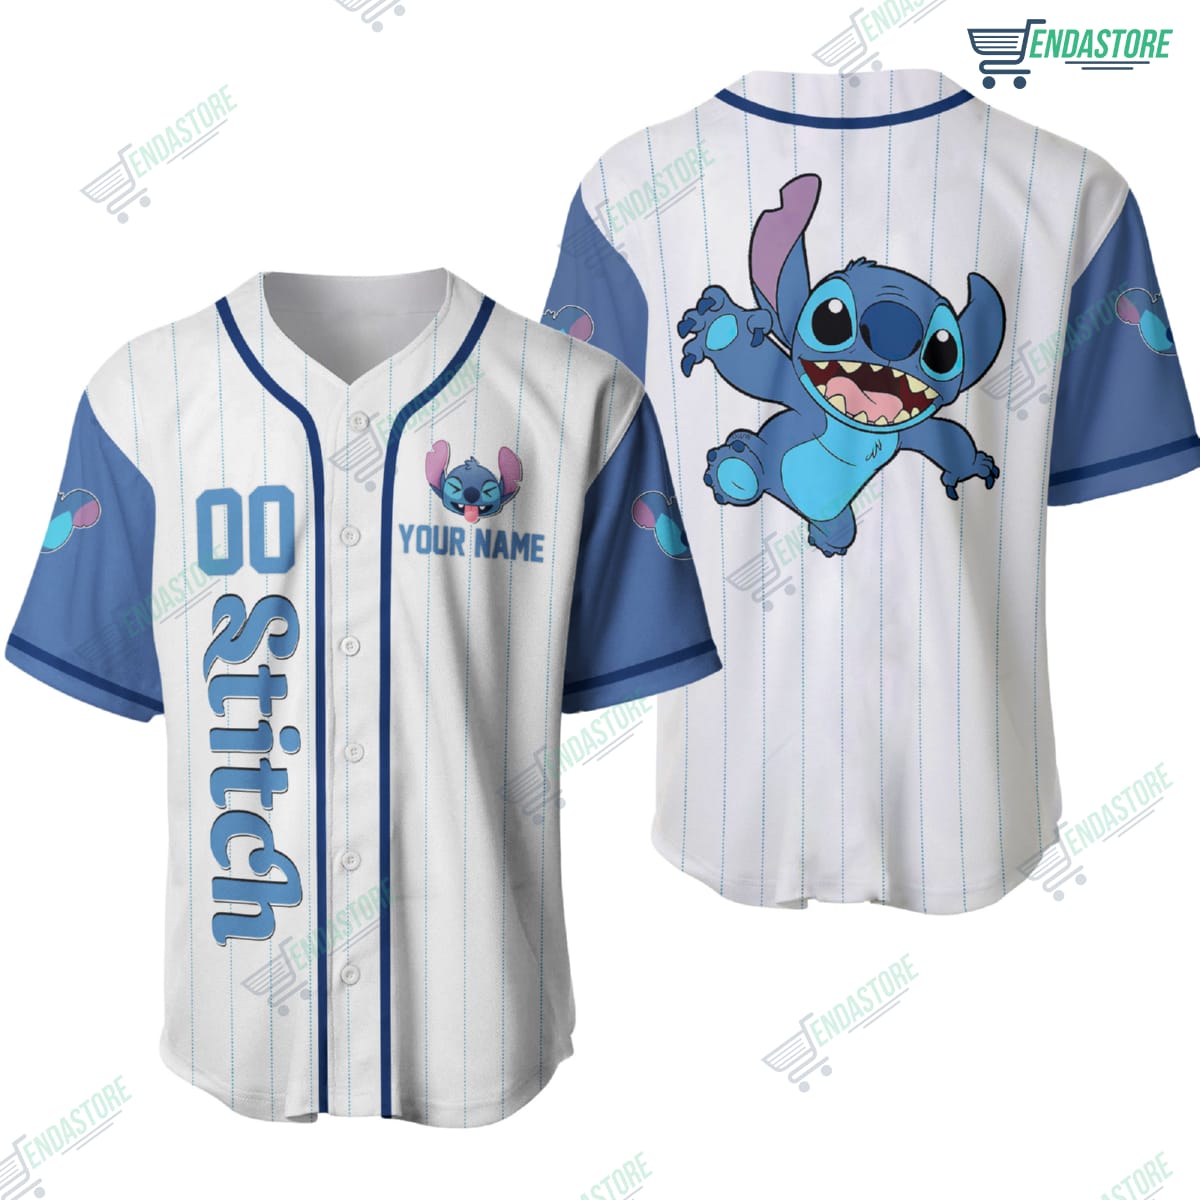 Texas Rangers Stitch custom Personalized Baseball Jersey